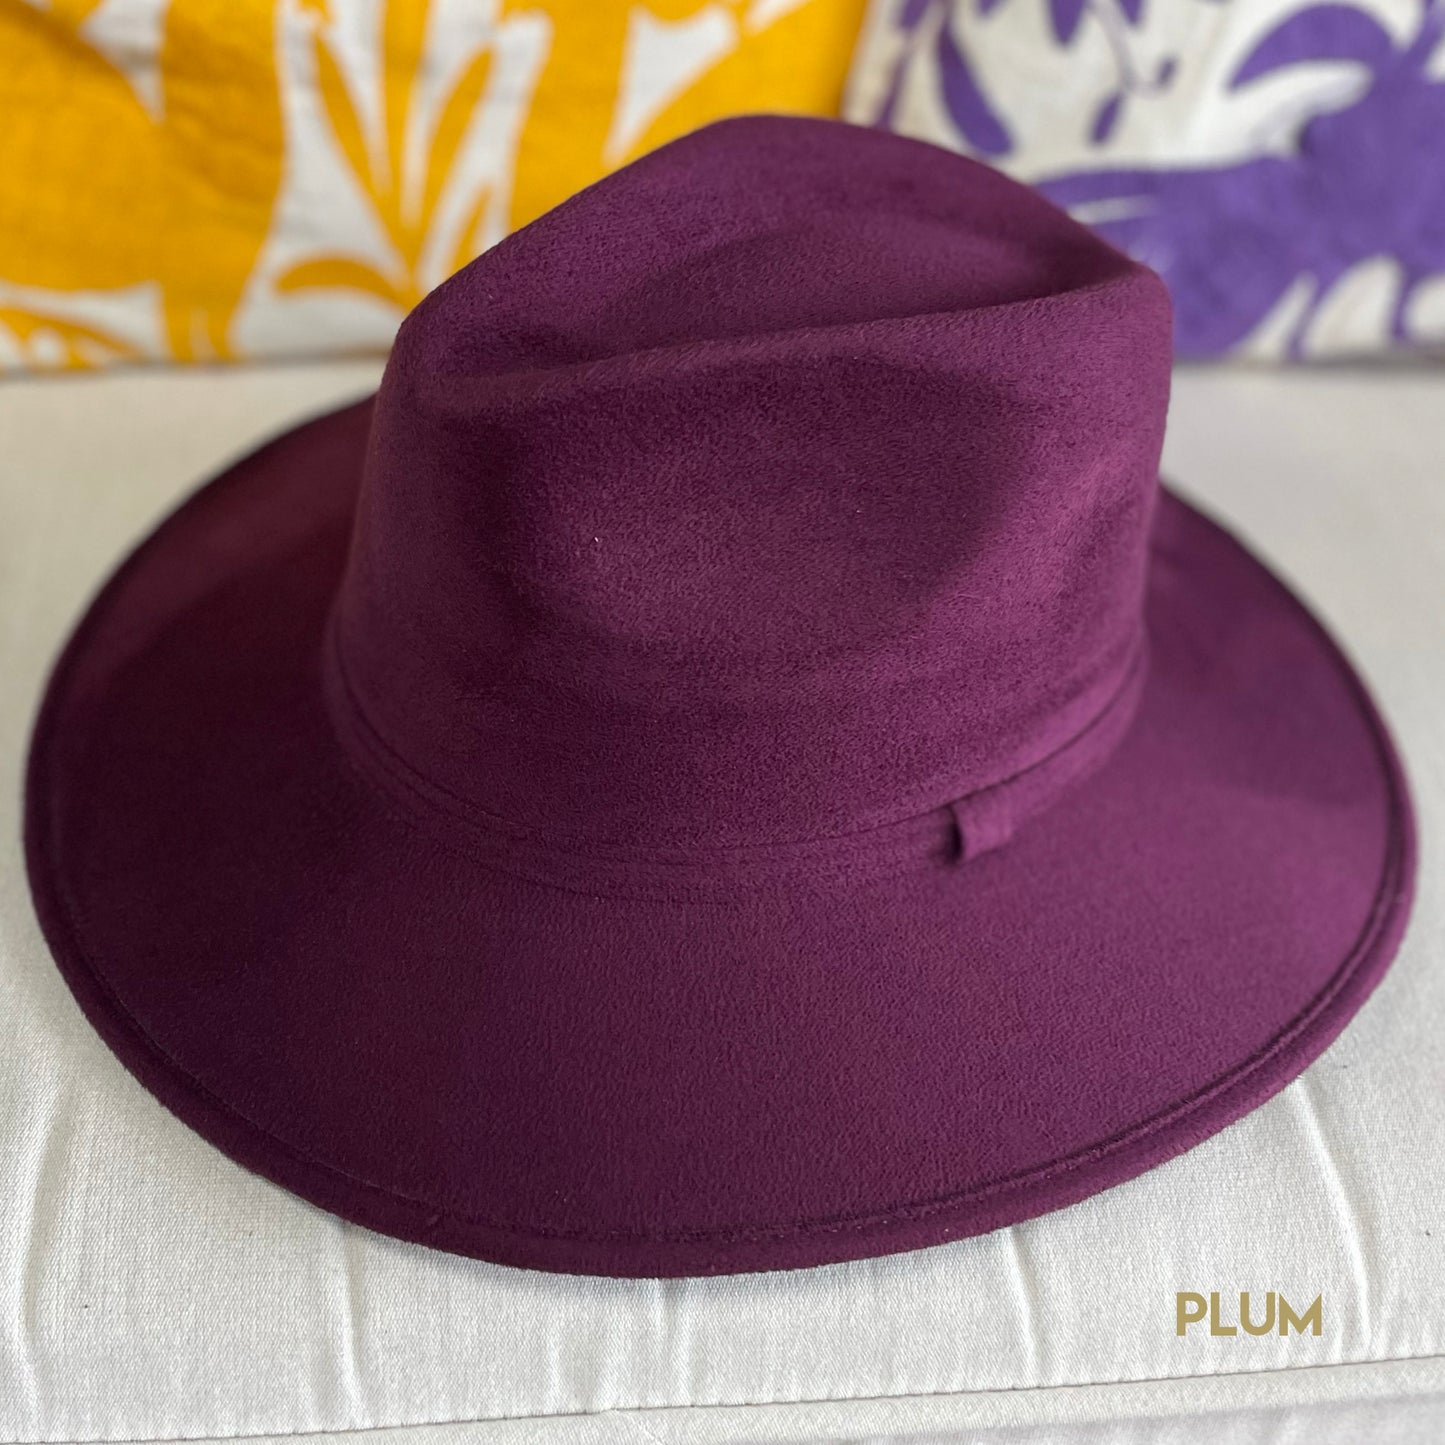 Indiana Style Fedora Hat